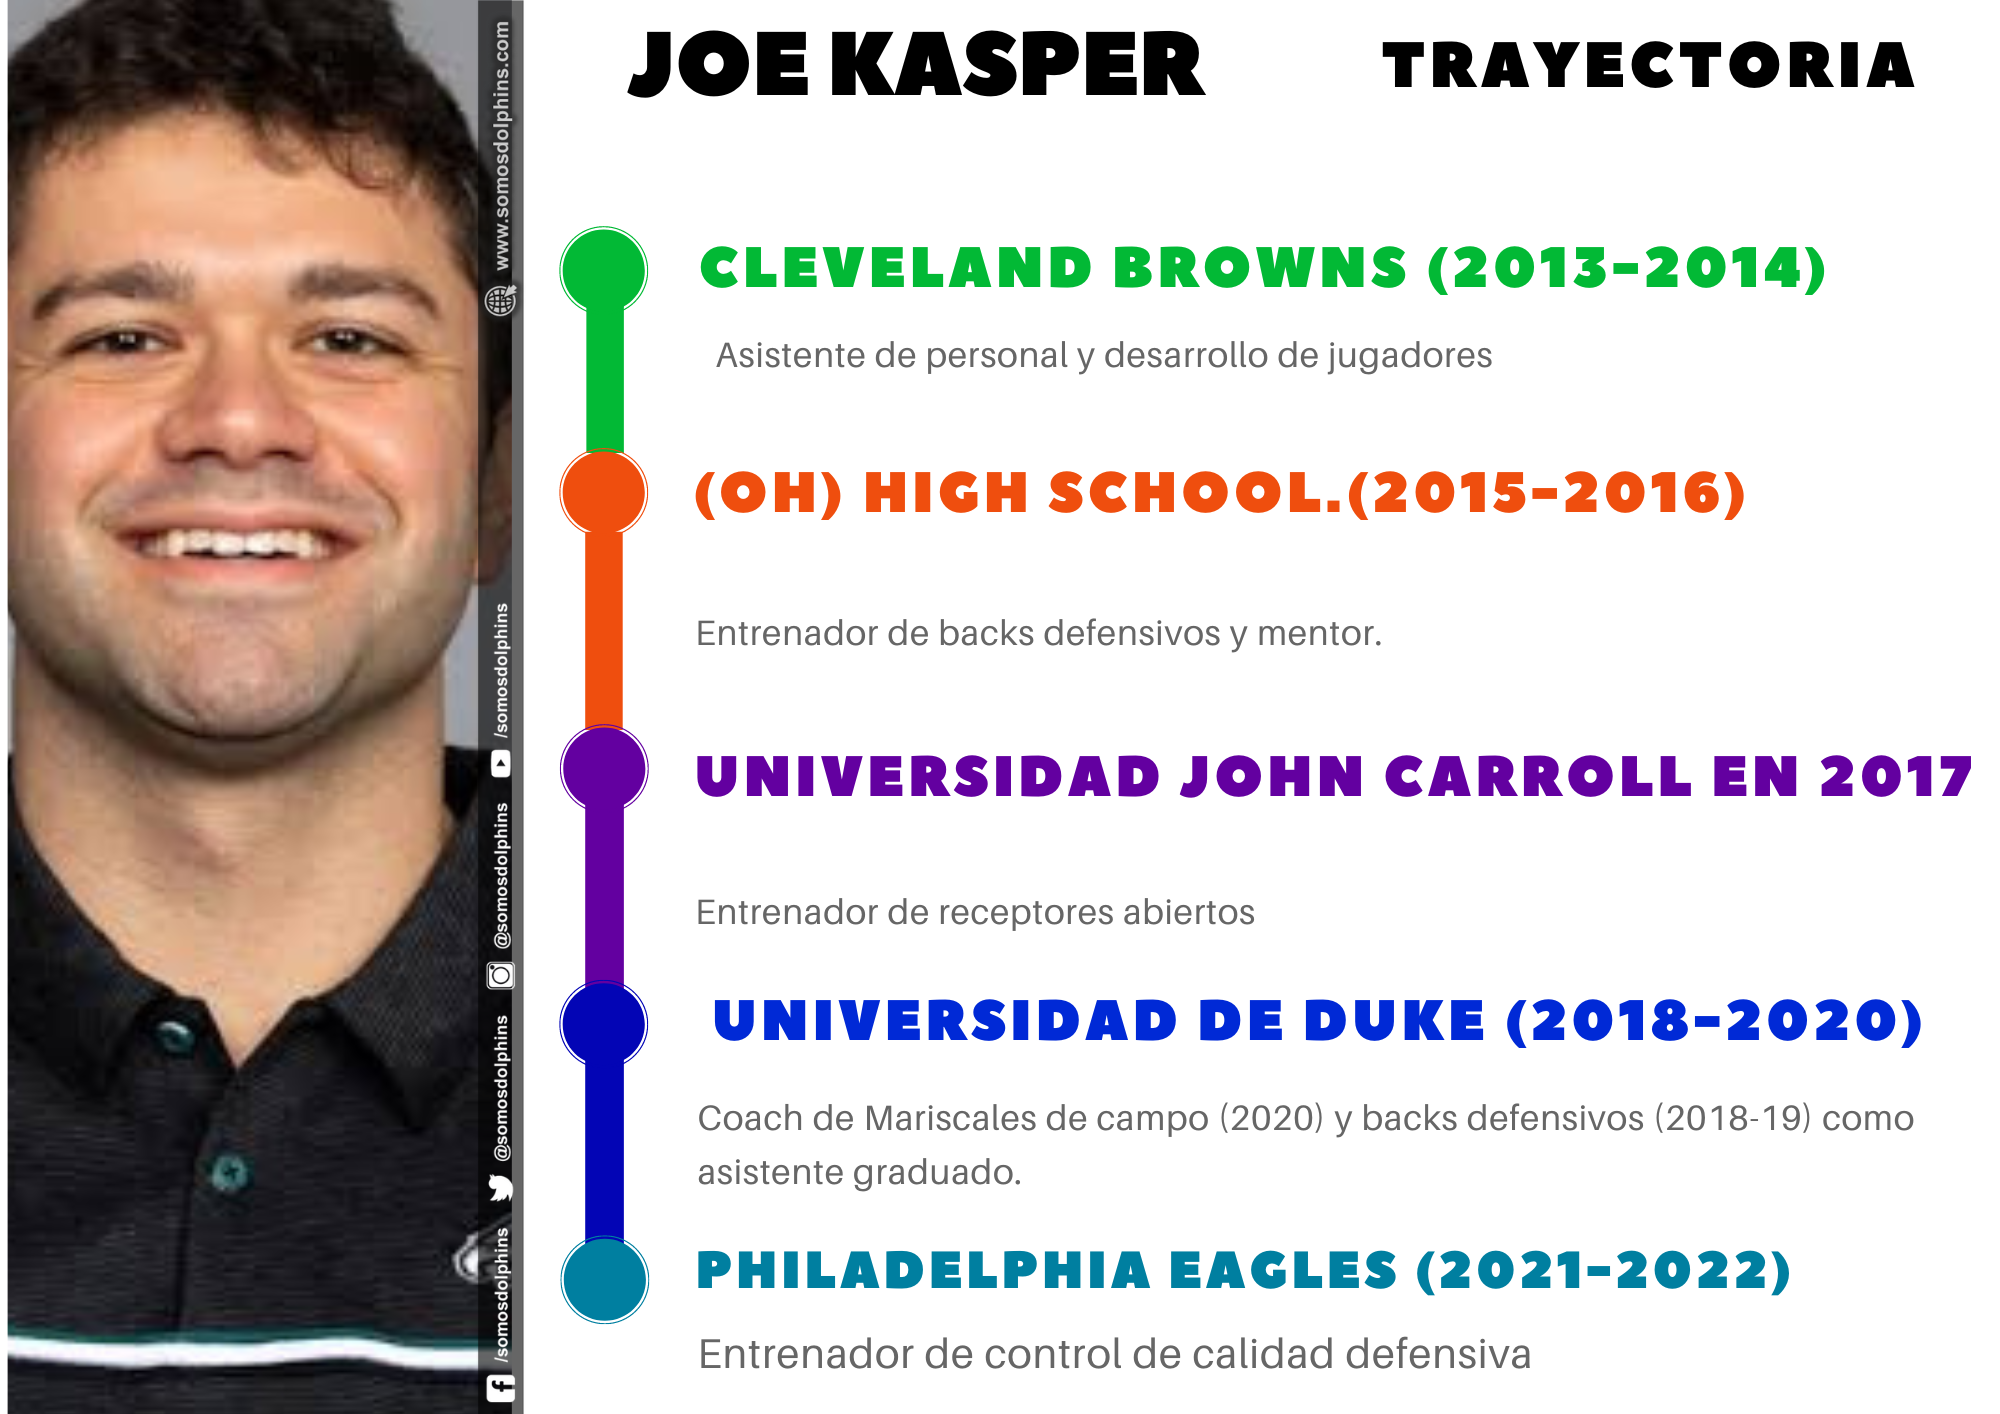 Joe Kasper trayectoria, nuevo entrenador en los Miami Dolphins 